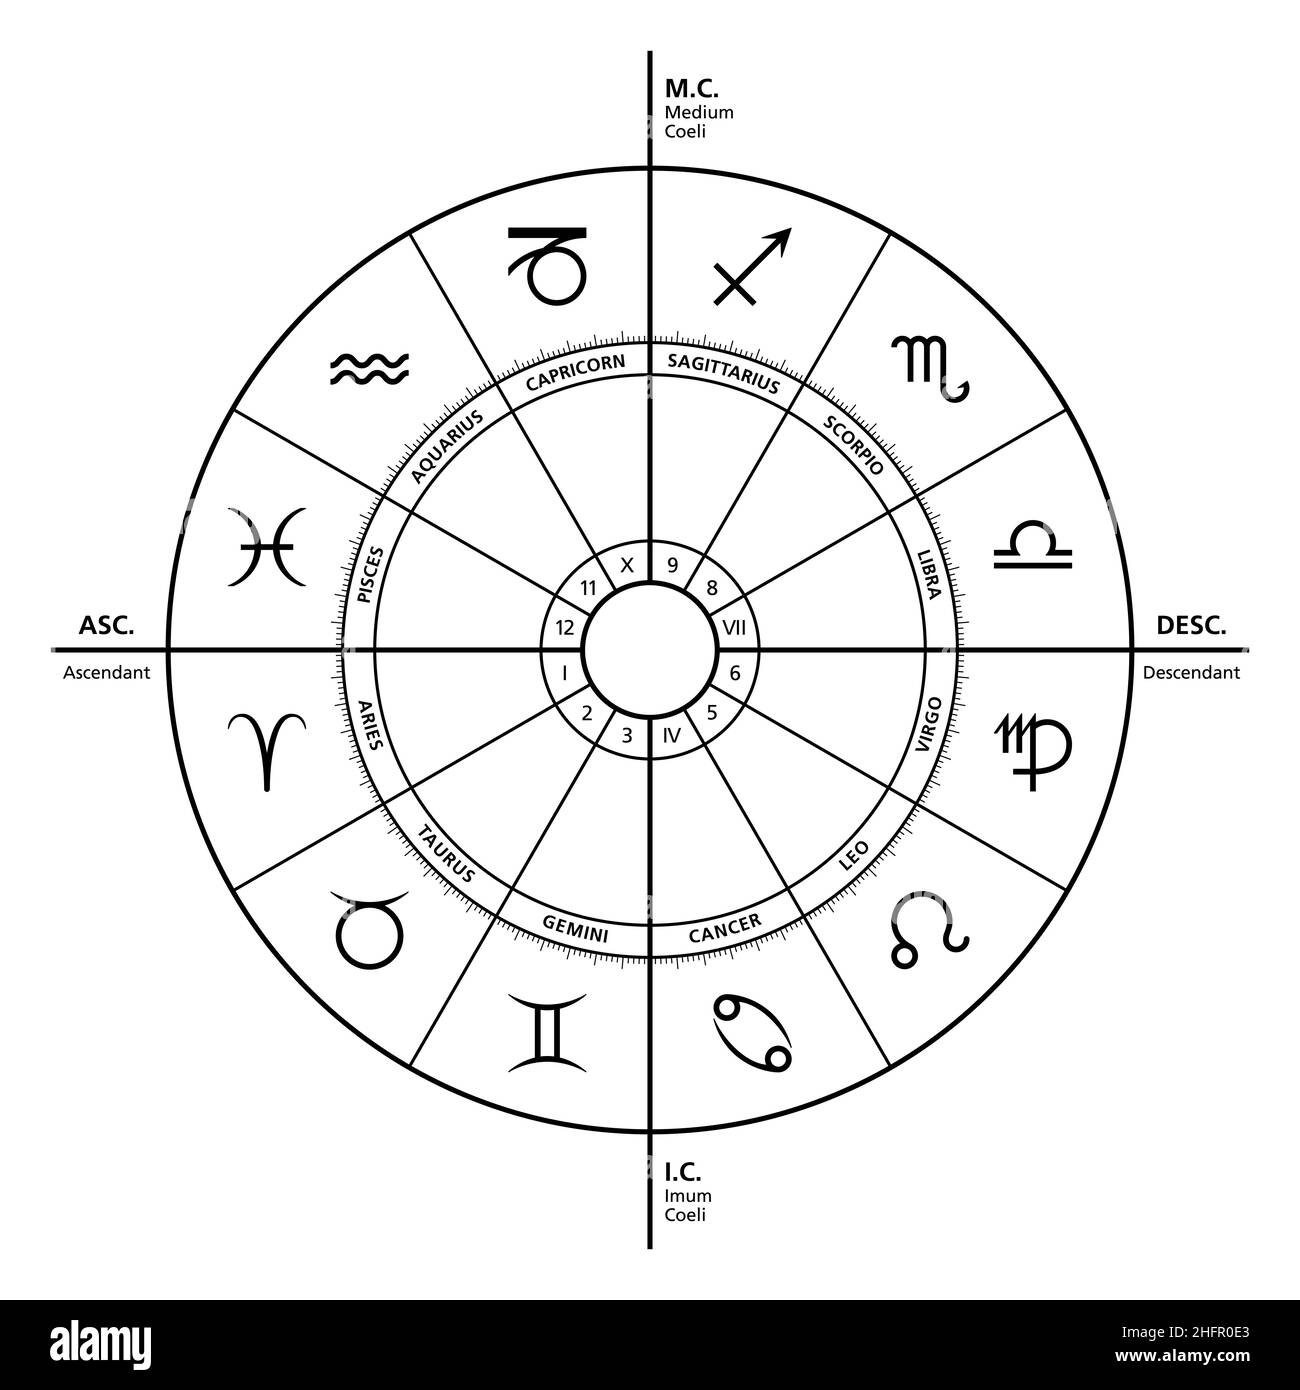 Les quatre principaux angles dans l'horoscope.Les maisons les plus puissantes sont Ascendant, Medium Coeli, descendant et Imum Coeli.Carte astrologique. Banque D'Images